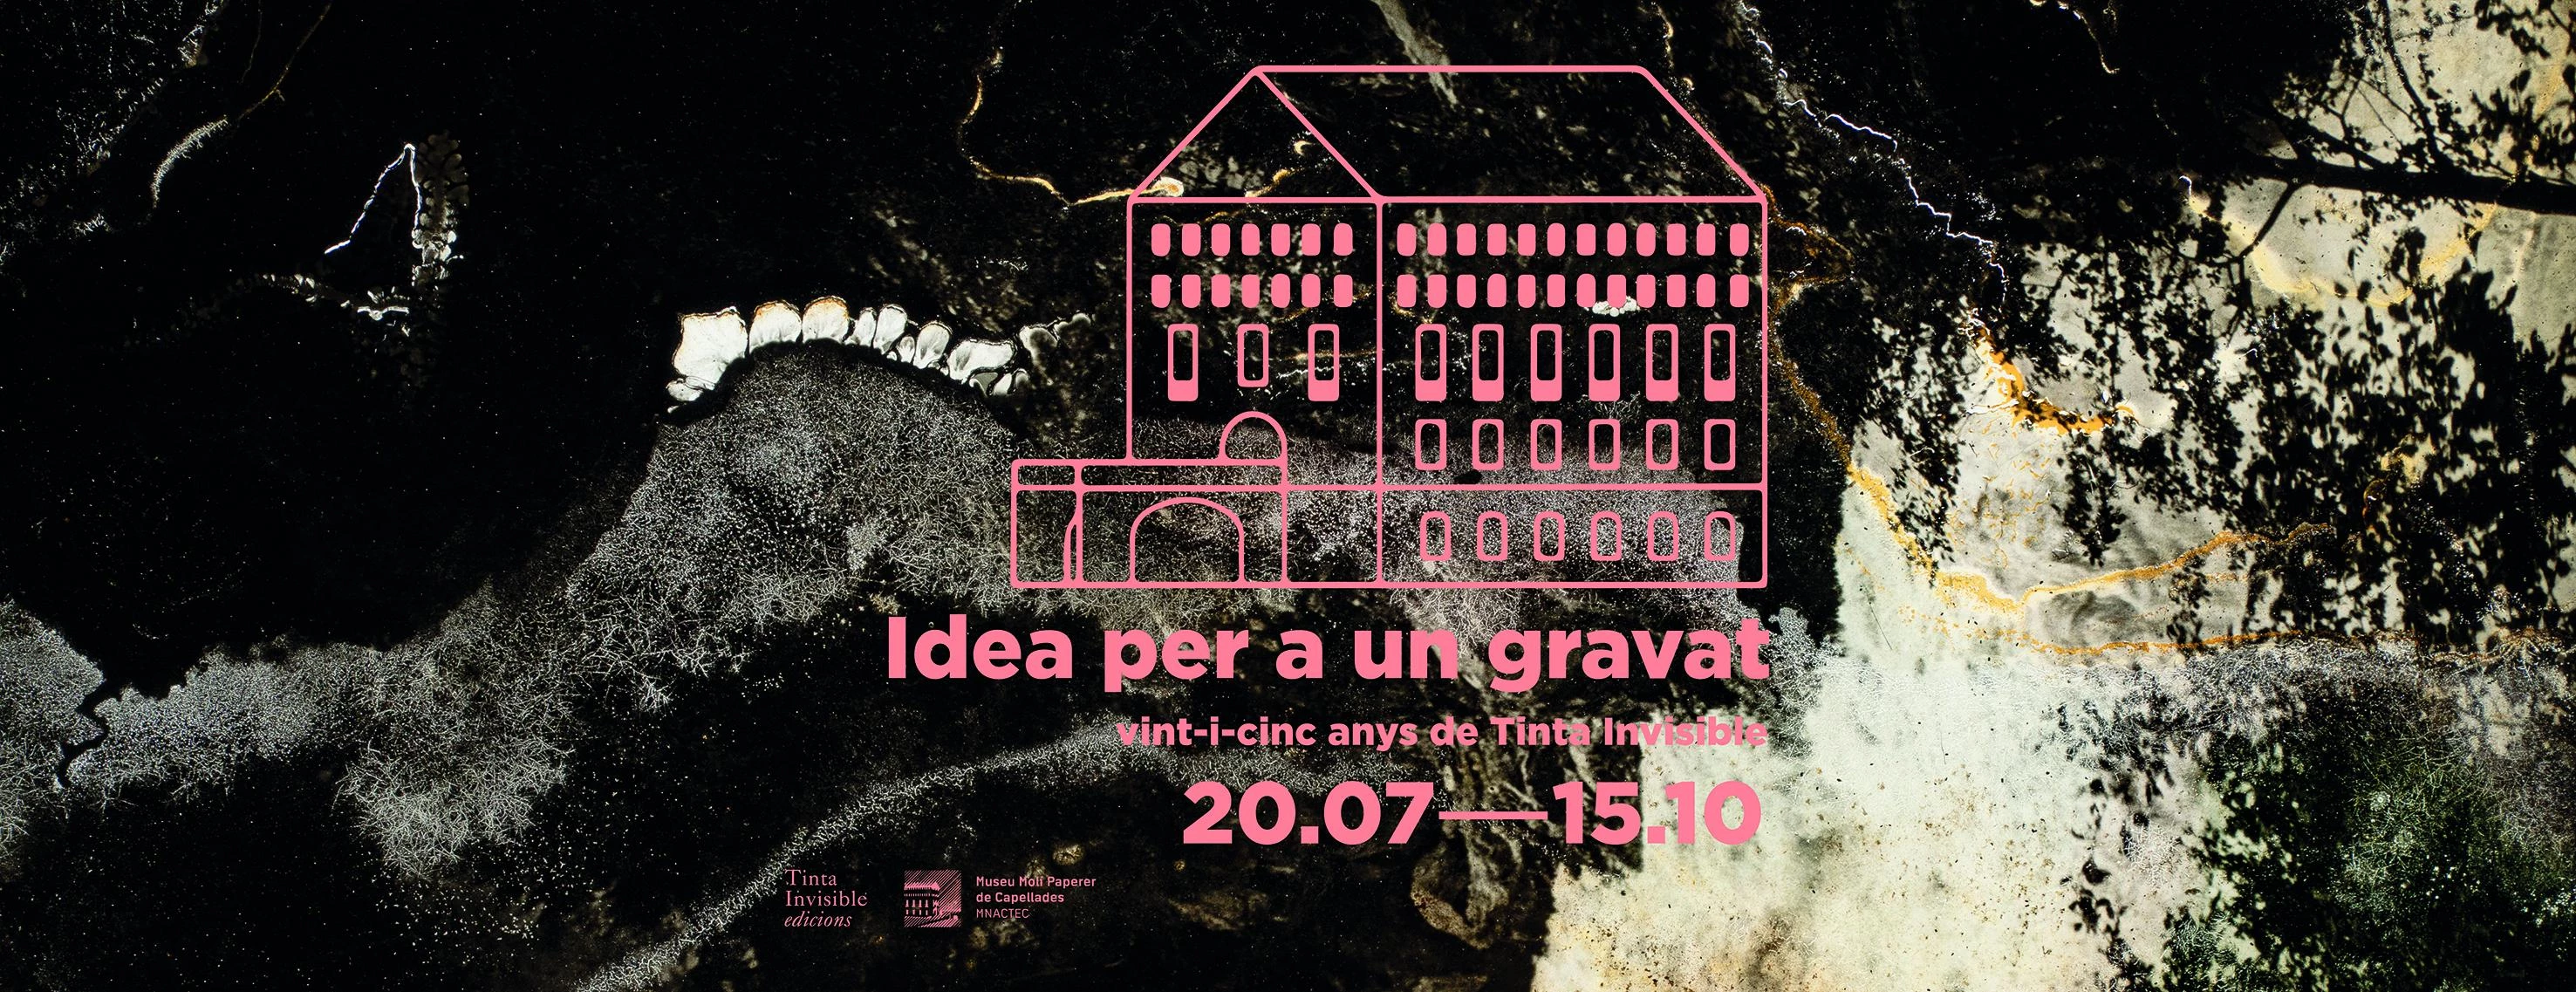 Inauguració de IDEA PER A UN GRAVAT al Museu Molí Paperer de Capellades